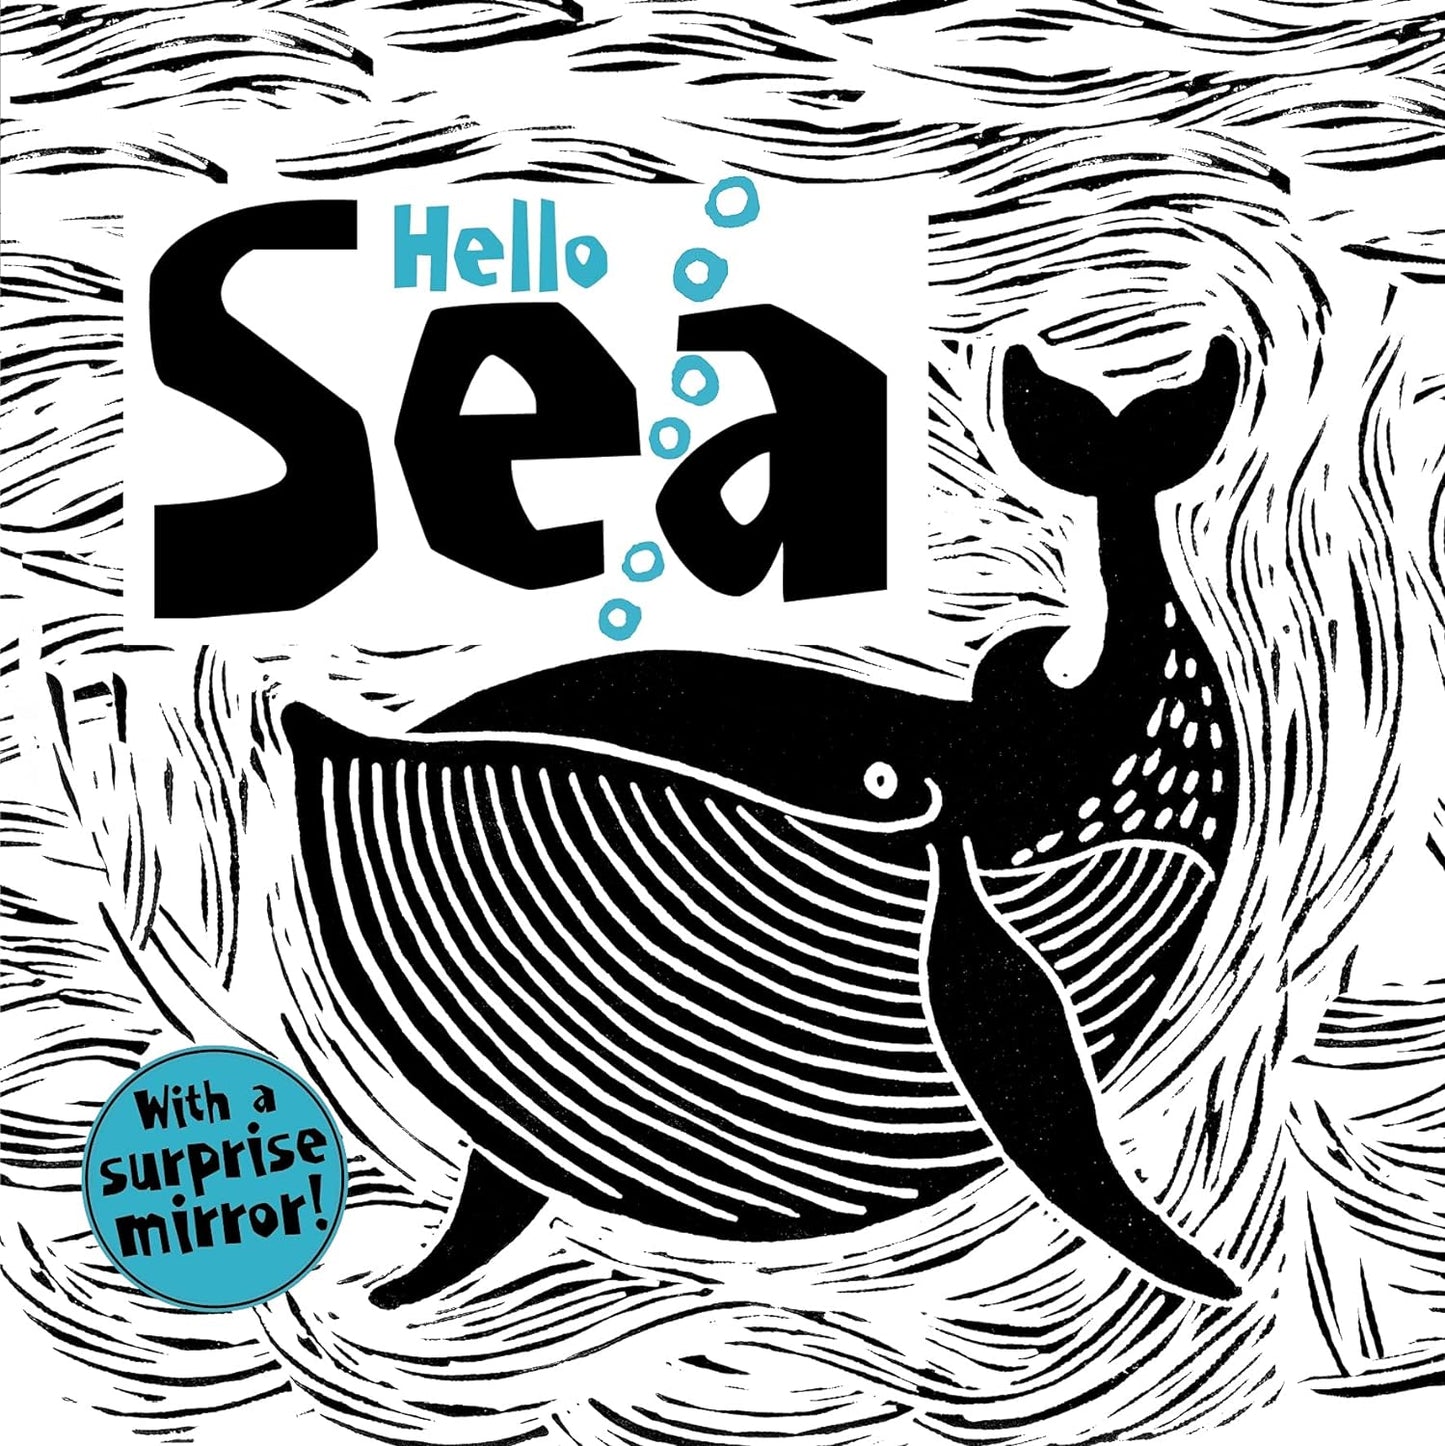 Hello Sea - high contrast board book